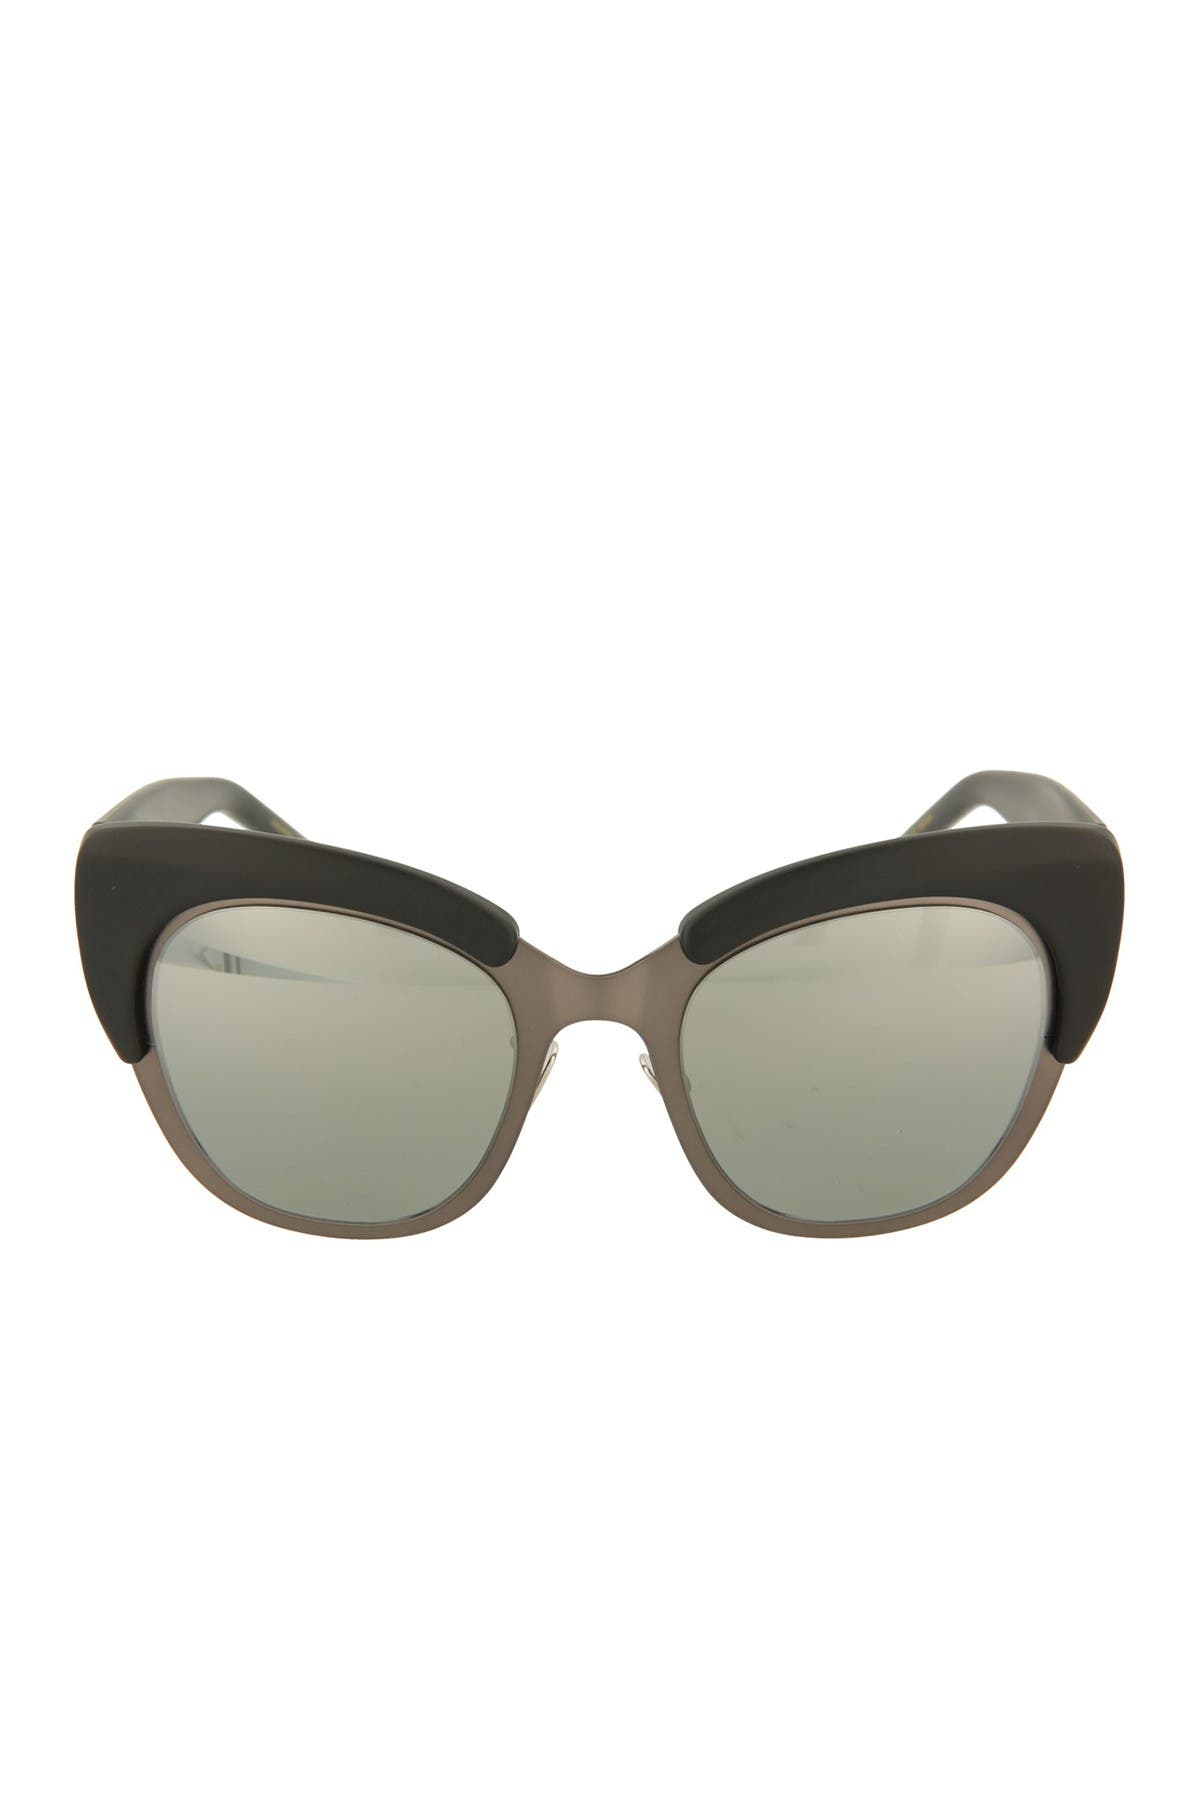 Pomellato 49mm Cat Eye Sunglasses In Black